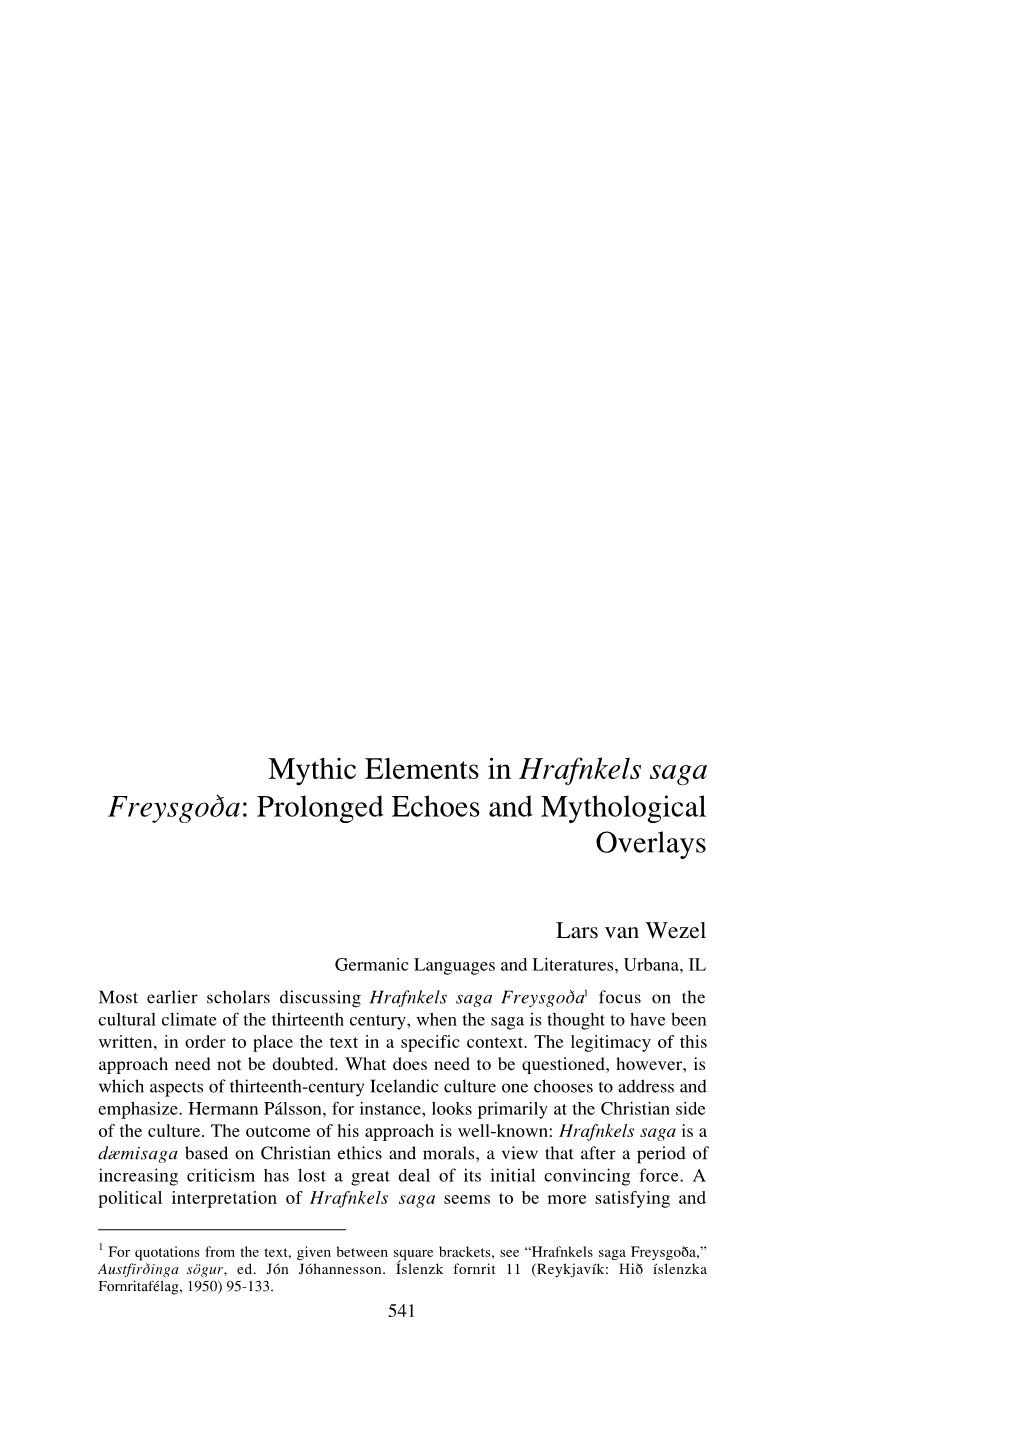 Mythic Elements in Hrafnkels Saga Freysgo›A: Prolonged Echoes and Mythological Overlays